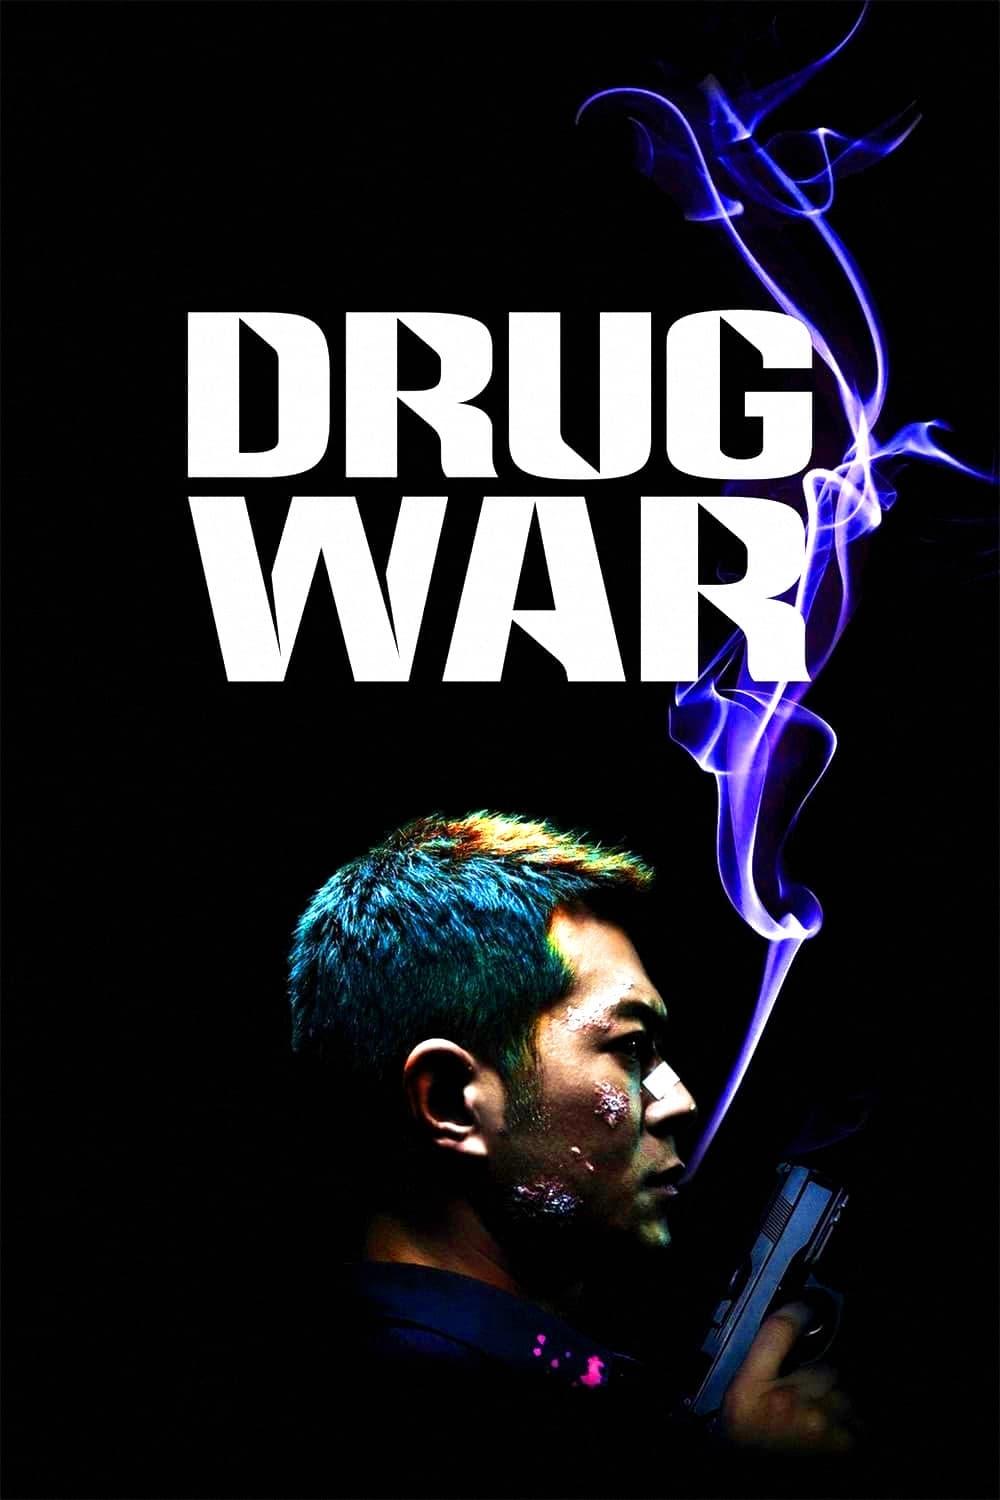 Drug War poster